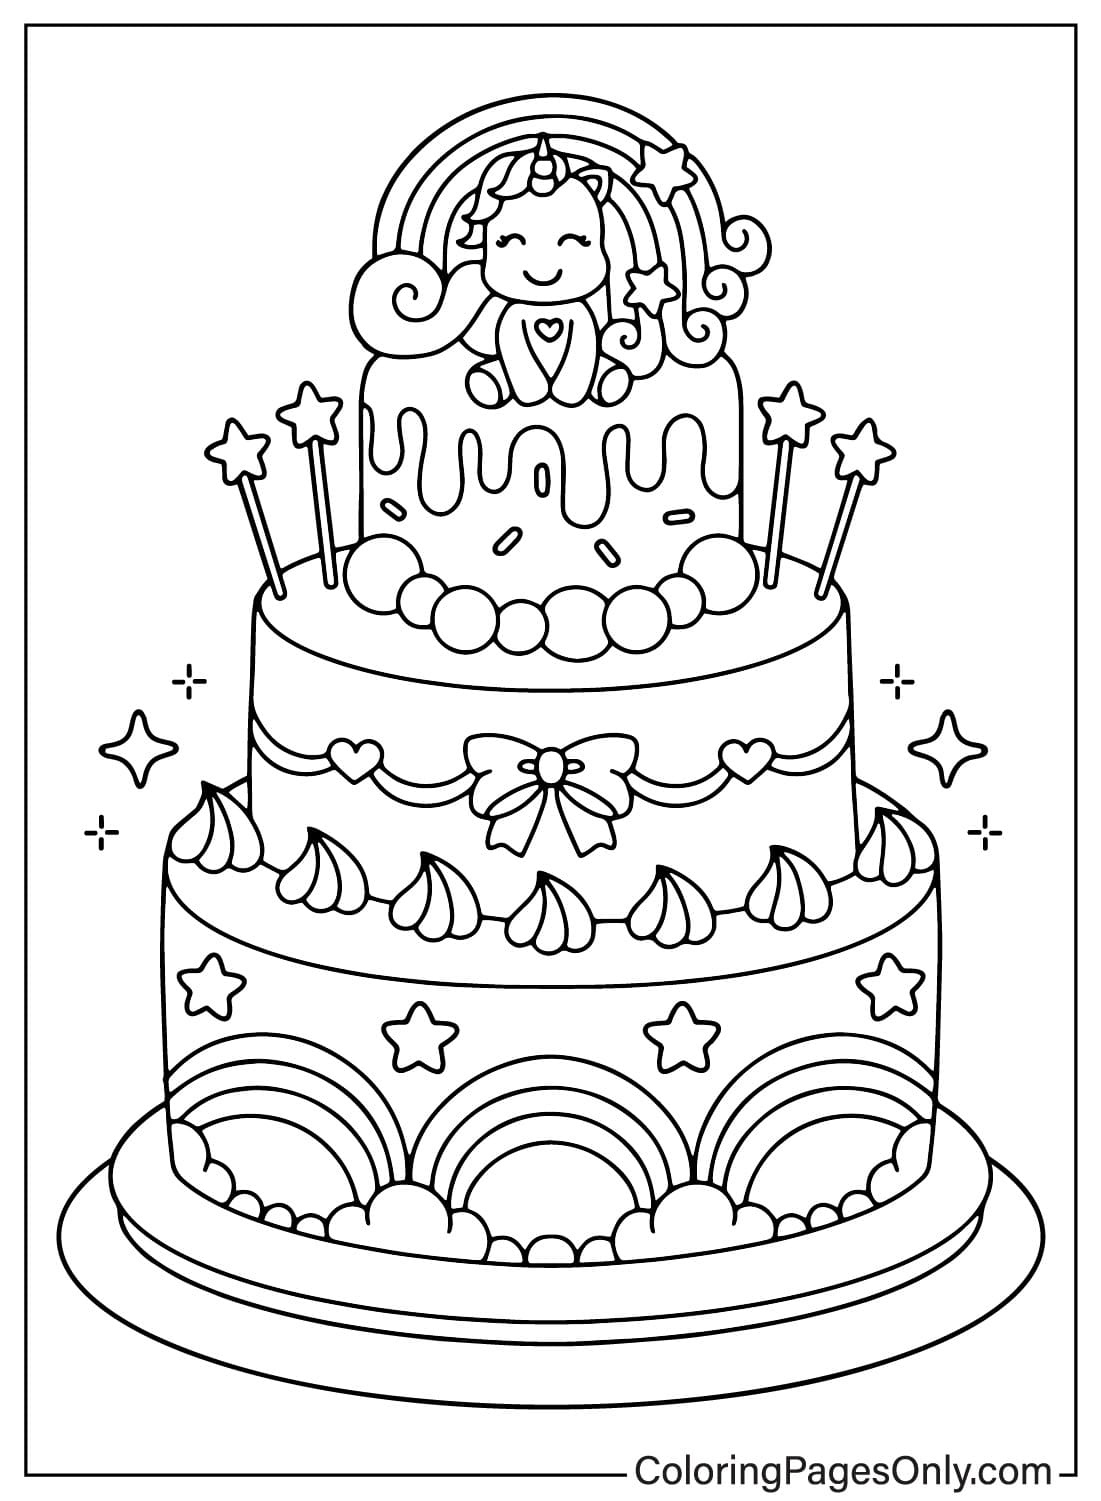 Pagina a colori della torta di compleanno dalla torta di compleanno